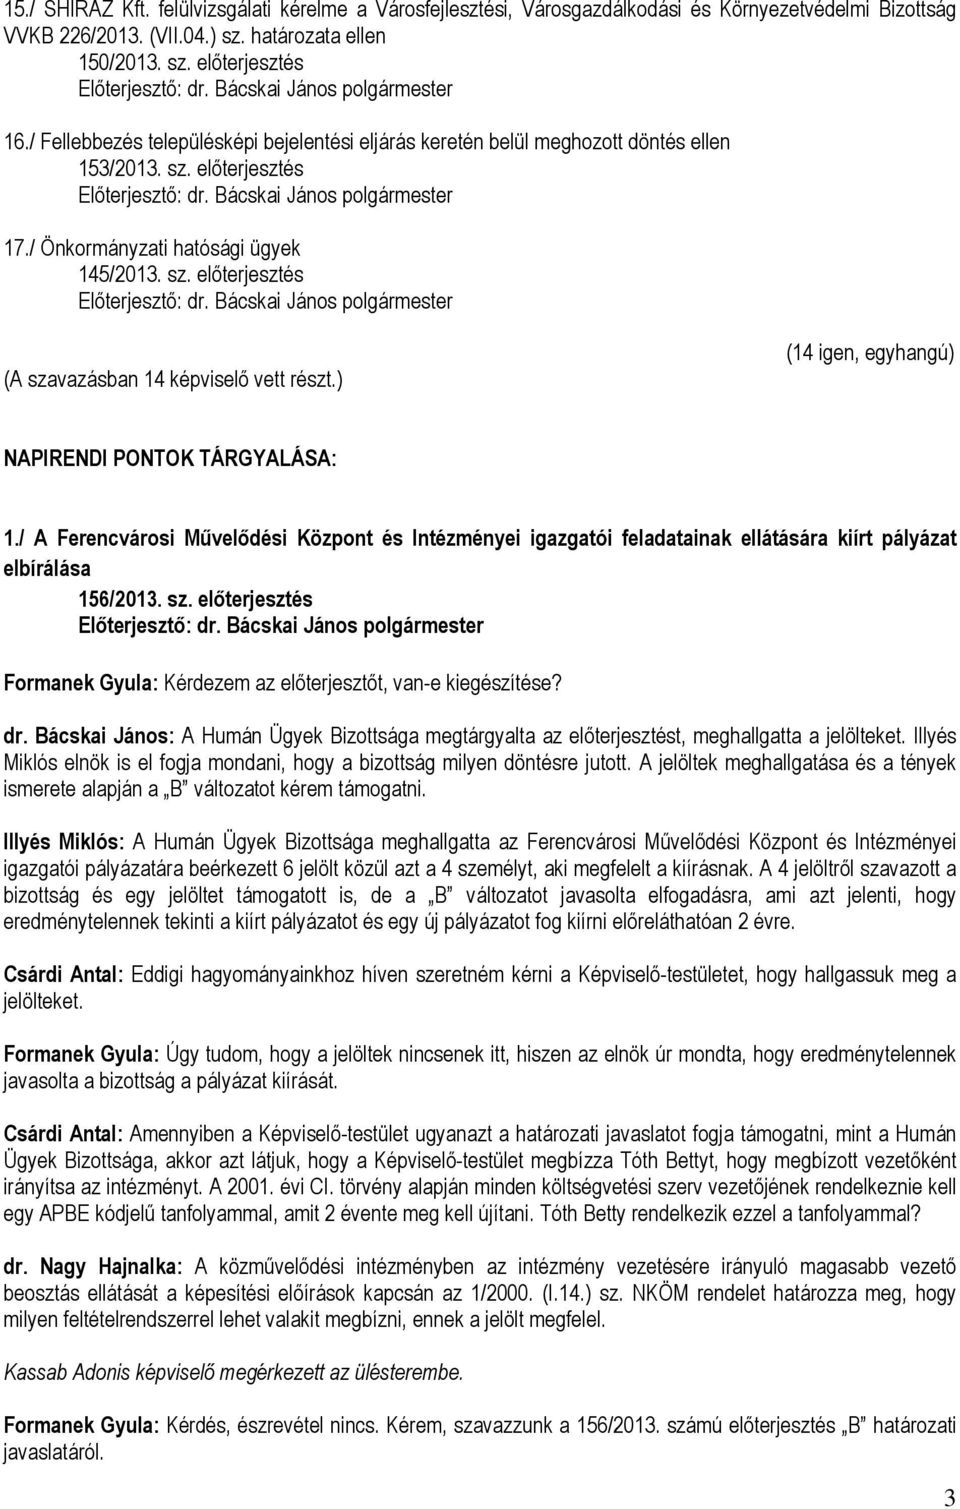 ) (14 igen, egyhangú) NAPIRENDI PONTOK TÁRGYALÁSA: 1./ A Ferencvárosi Művelődési Központ és Intézményei igazgatói feladatainak ellátására kiírt pályázat elbírálása 156/2013. sz. előterjesztés dr.